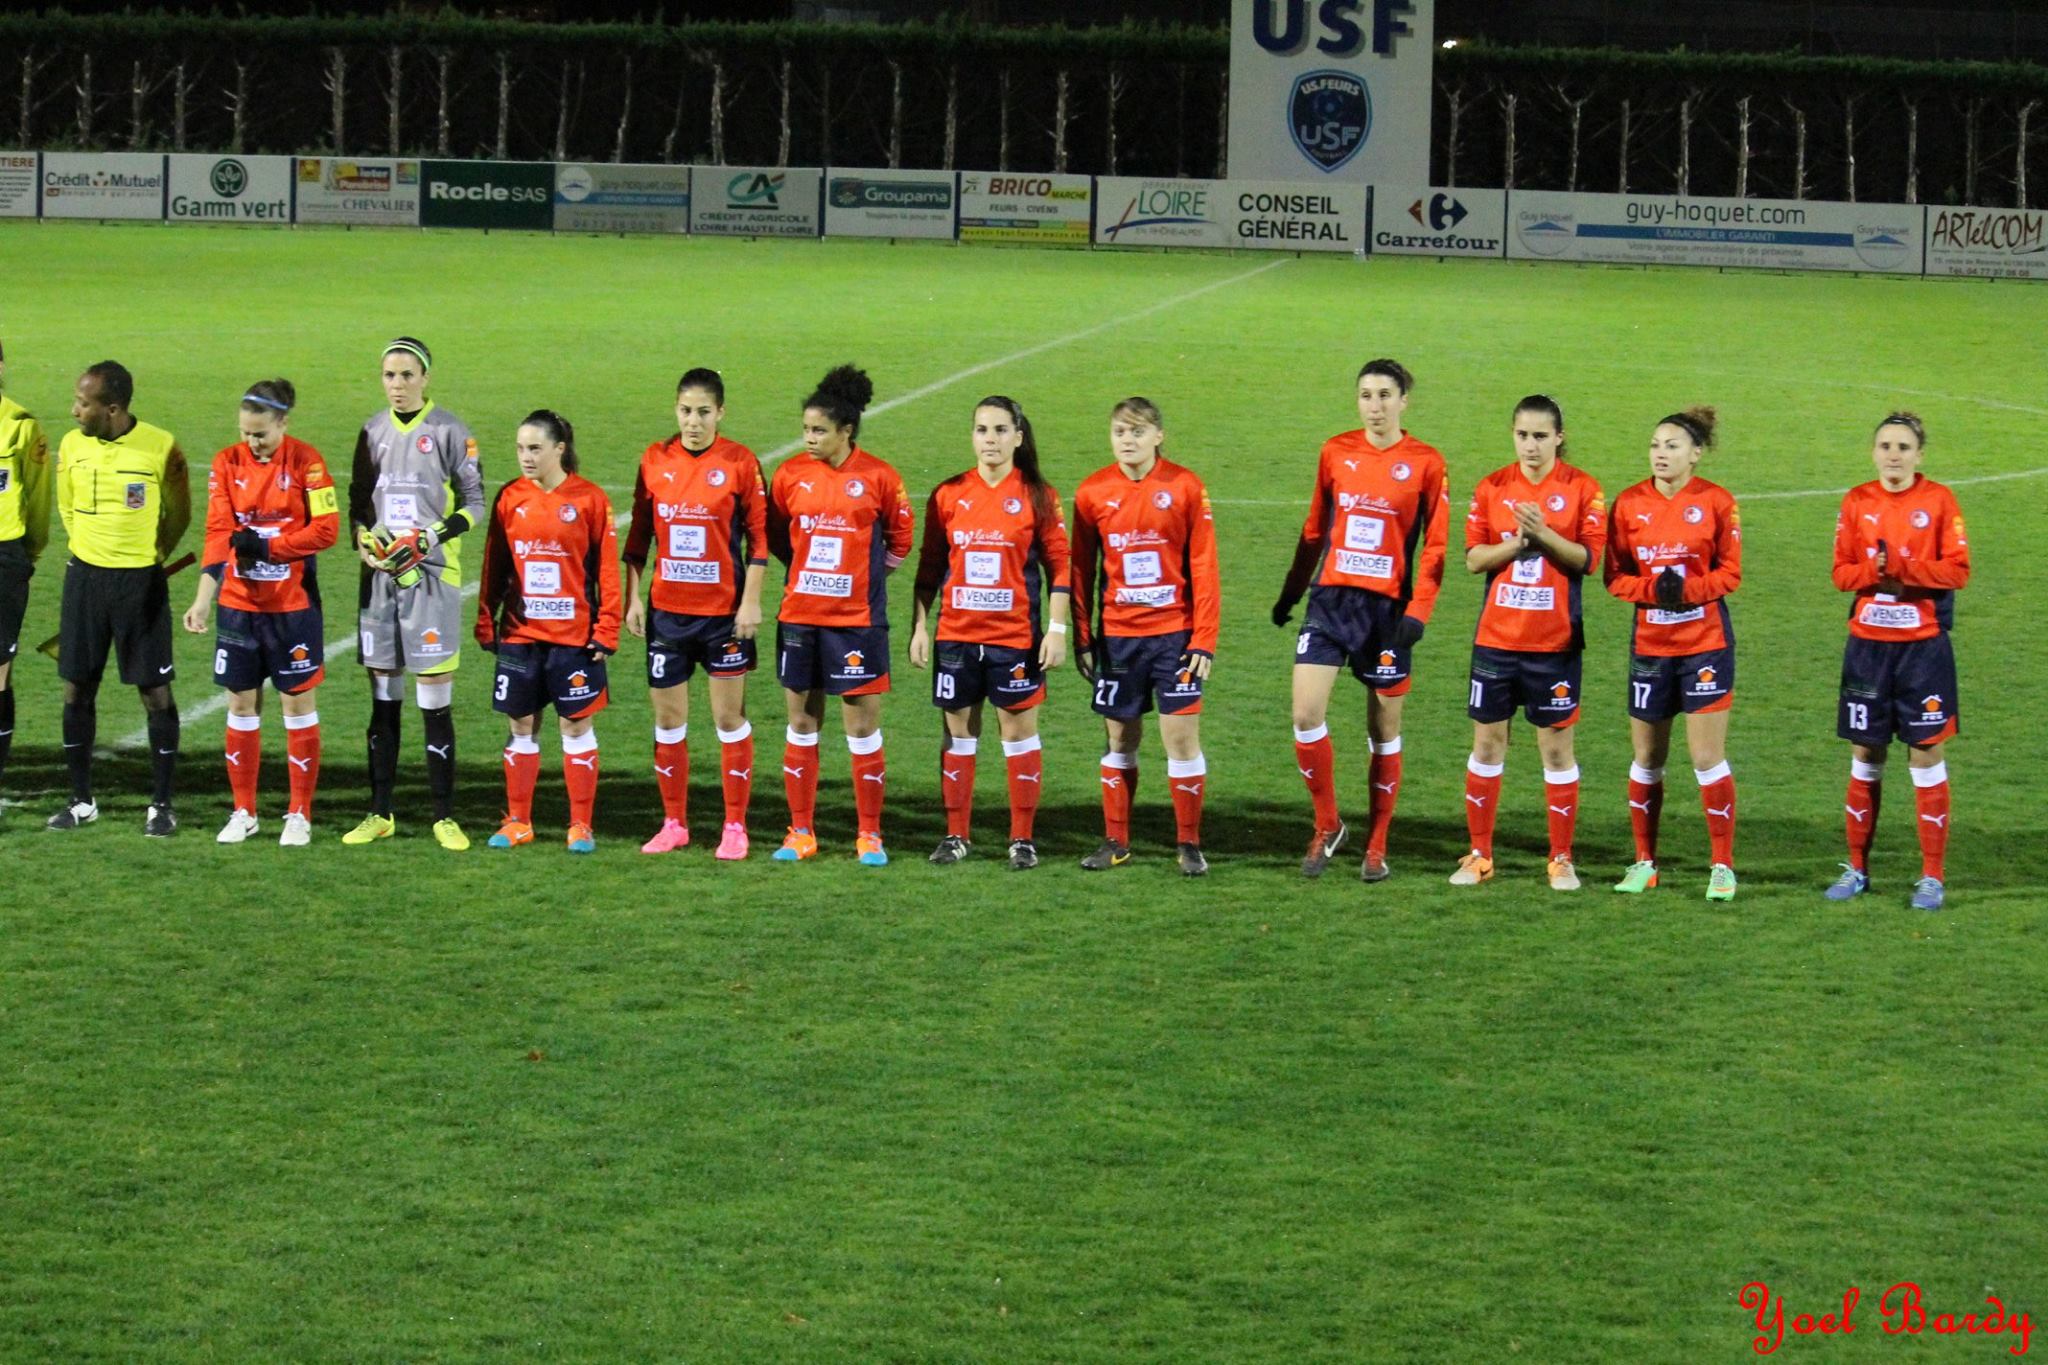 La Roche s'était incliné 3-0 à Saint-Etienne (photo Yoel Bardy)